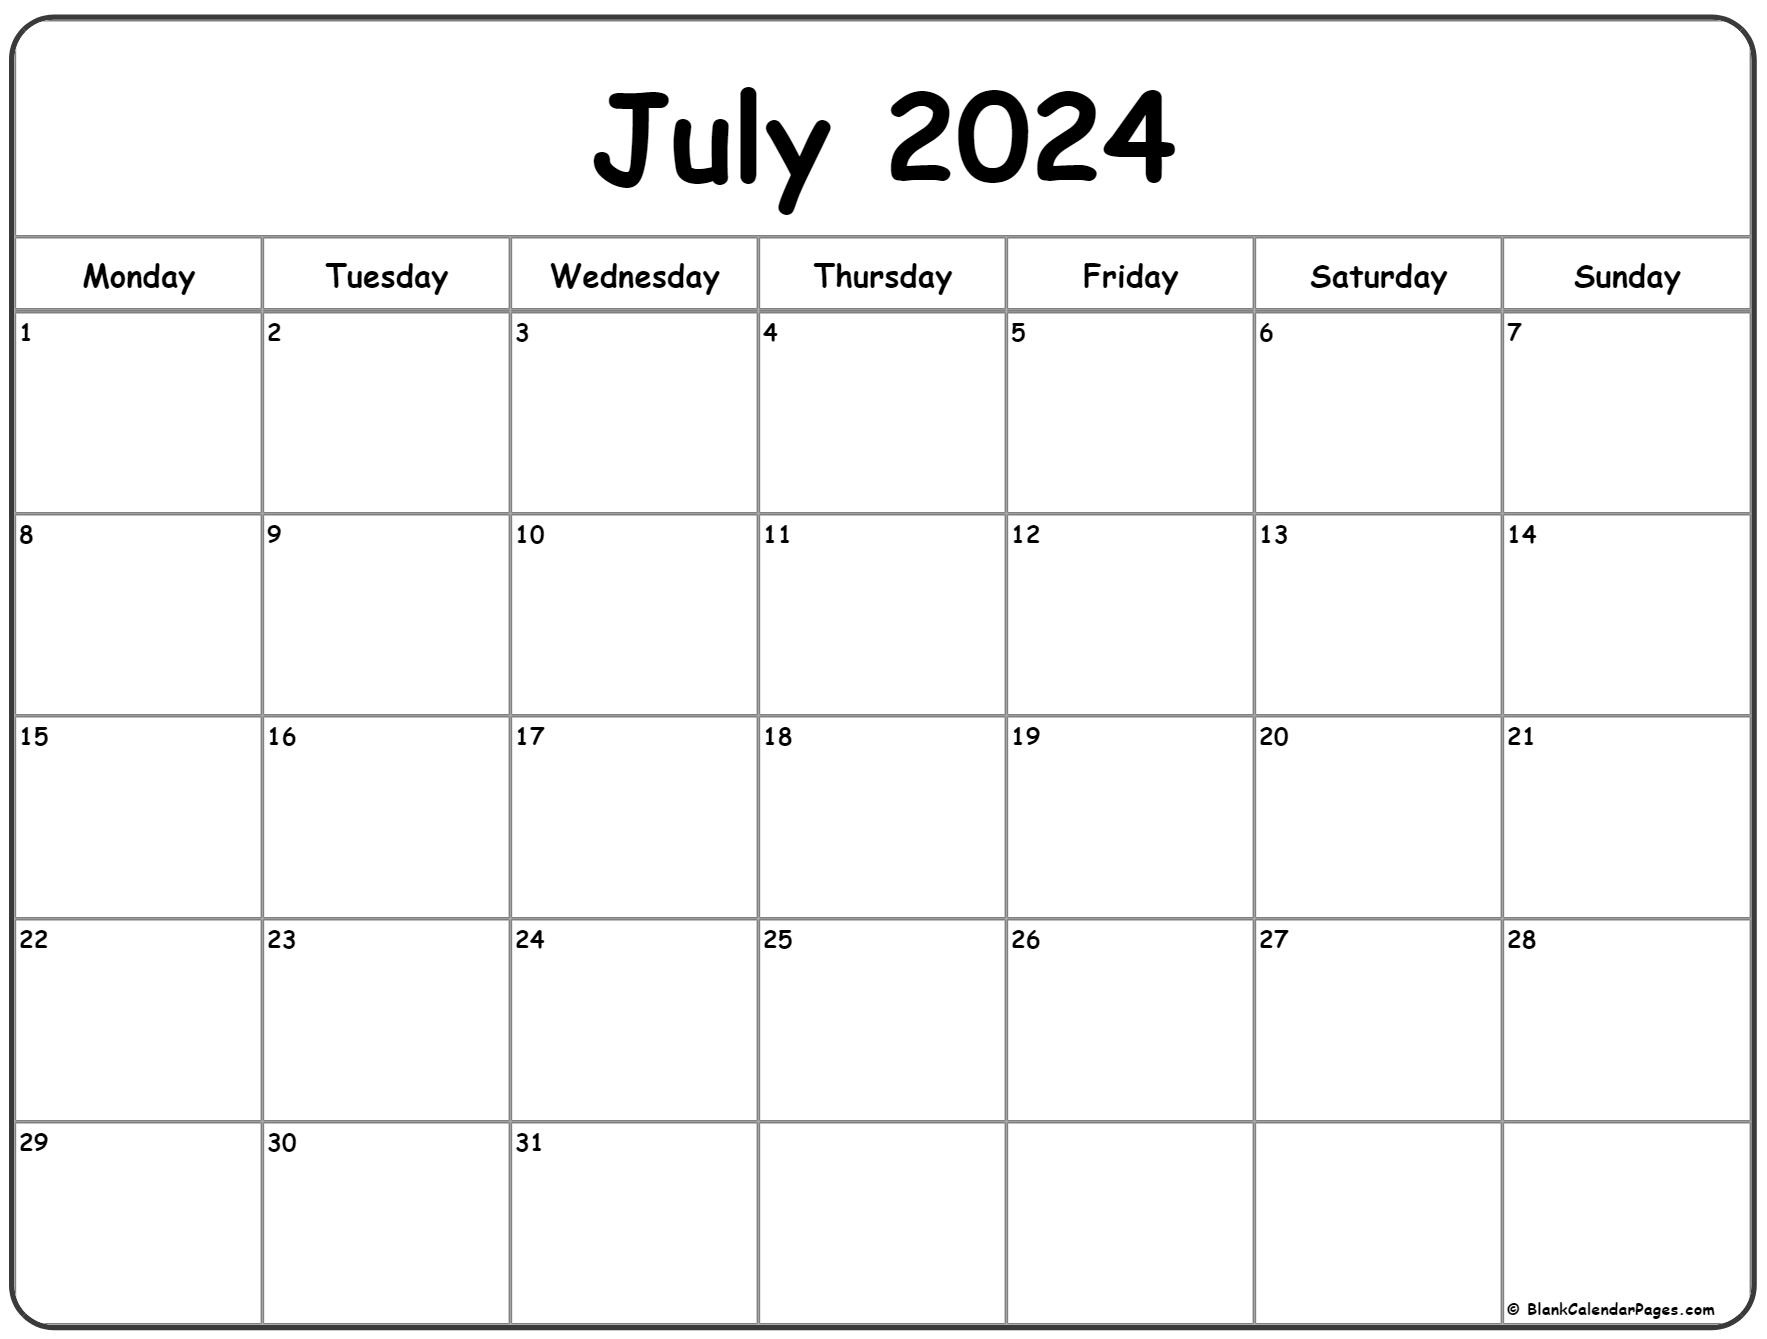 July 2024 Monday Calendar | Monday To Sunday intended for July 2024 Calendar Monday Start